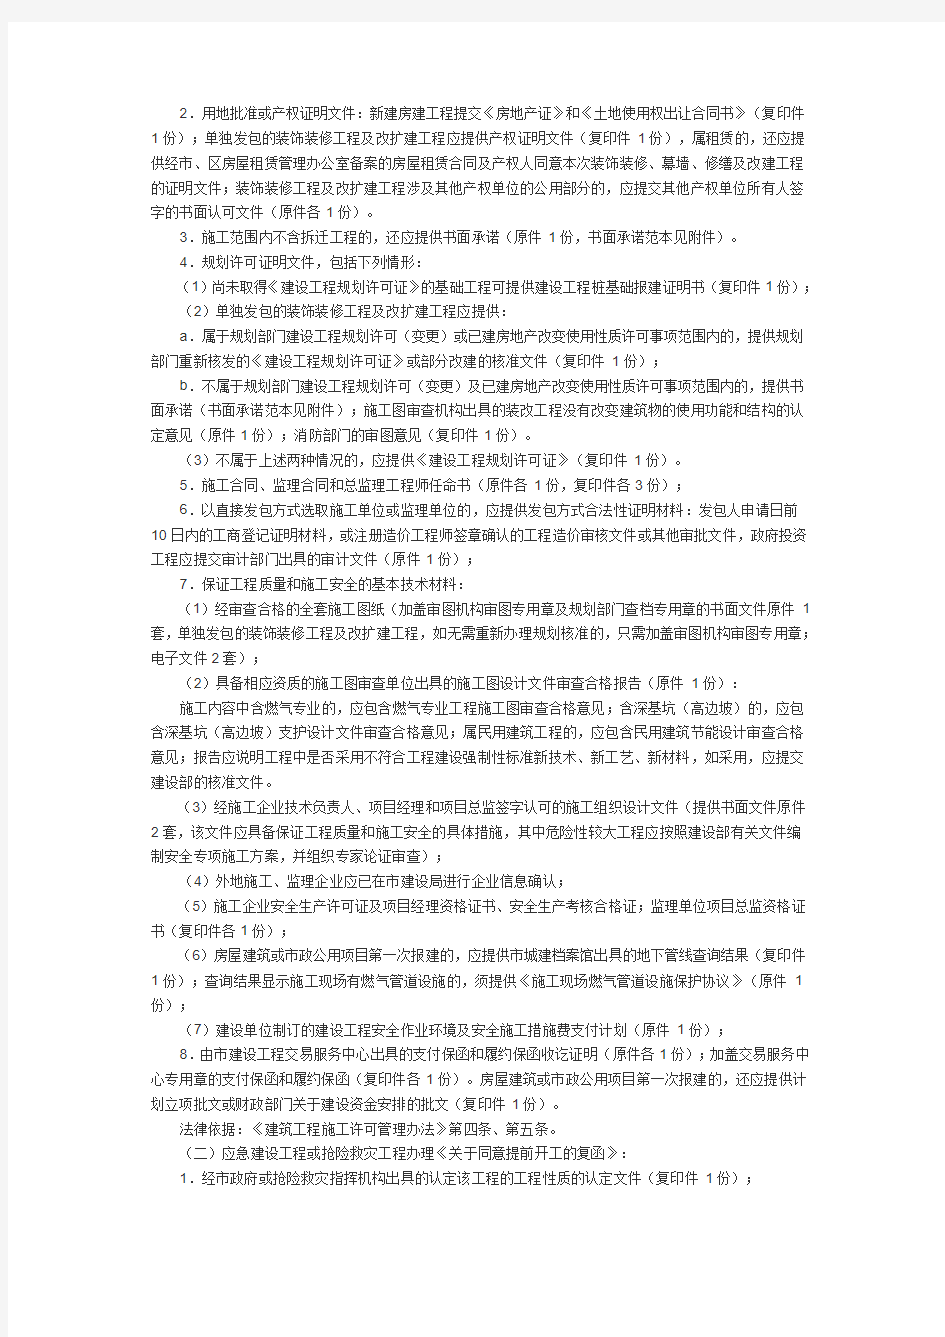 深圳市建设局建设工程施工许可实施办法